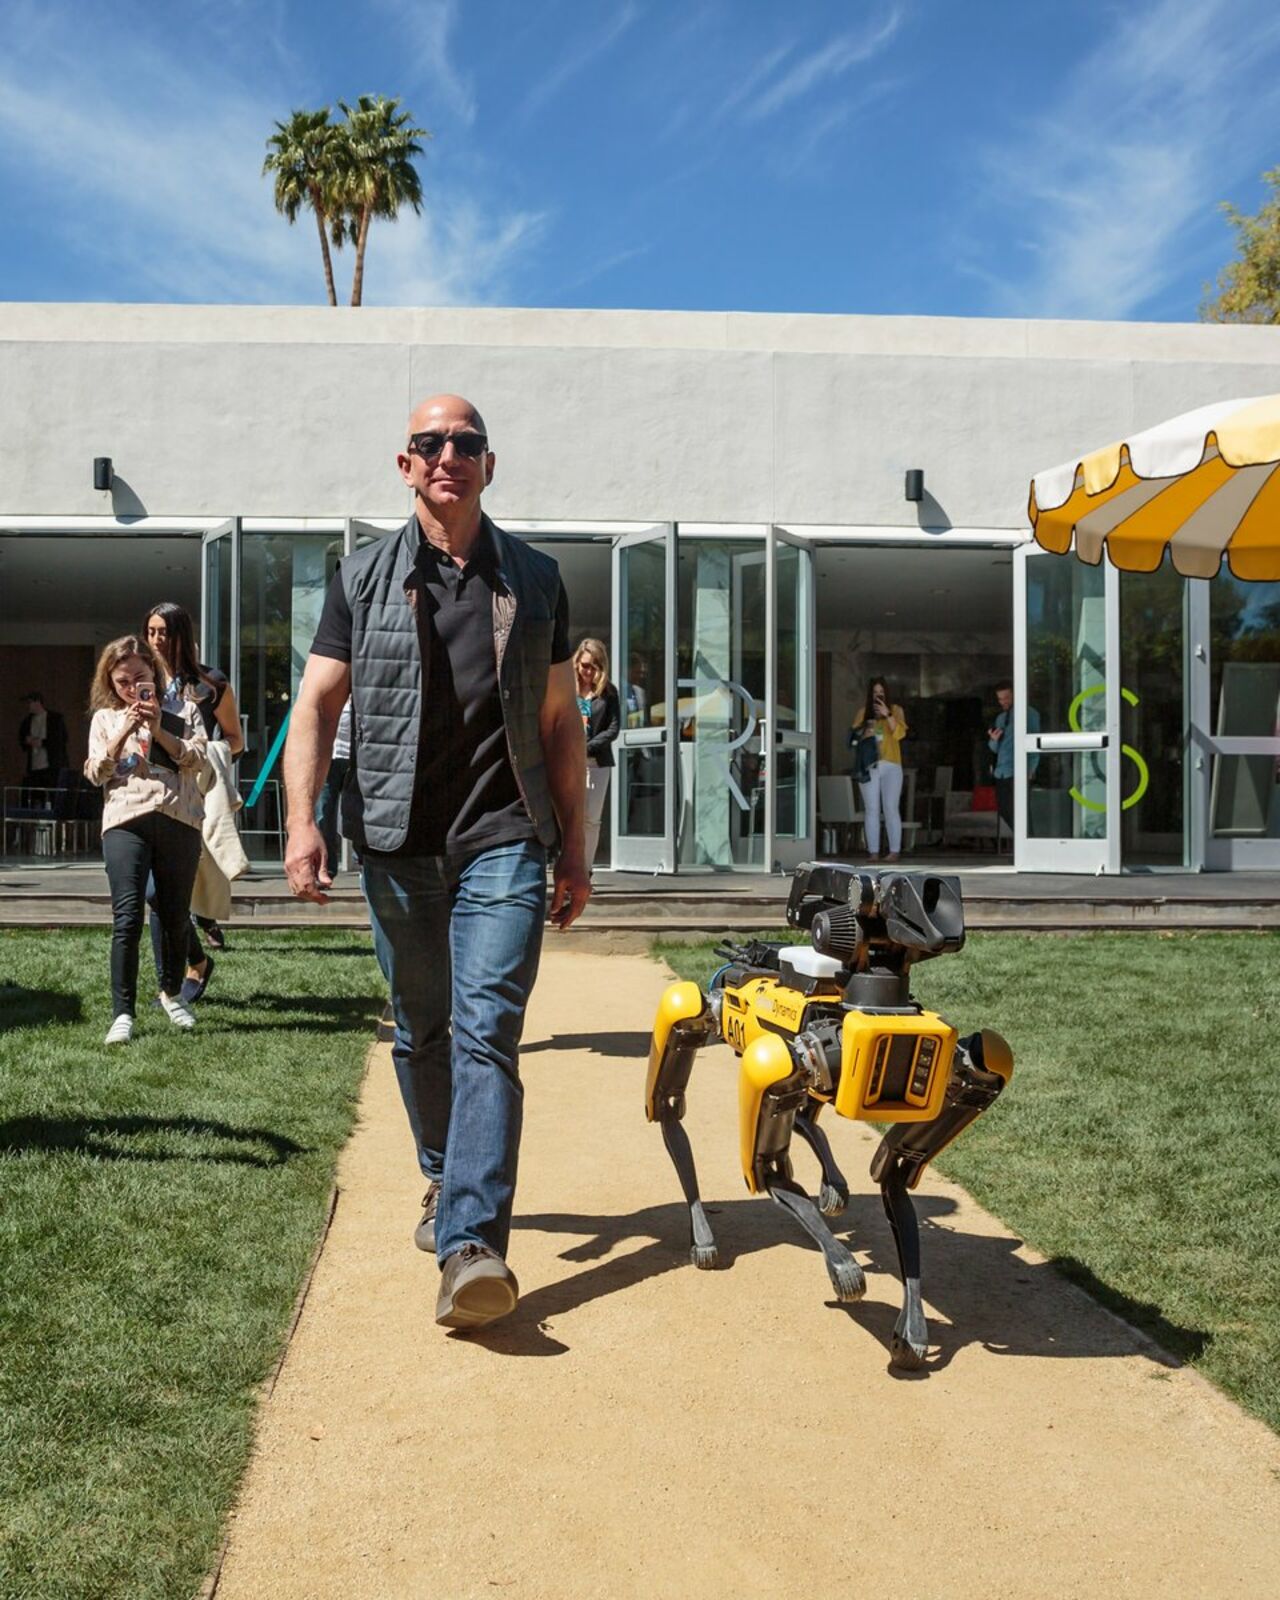 Глава Amazon и самый богатый человек в мире Джефф Безос завел себе роботизированную собаку от Boston Dynamics